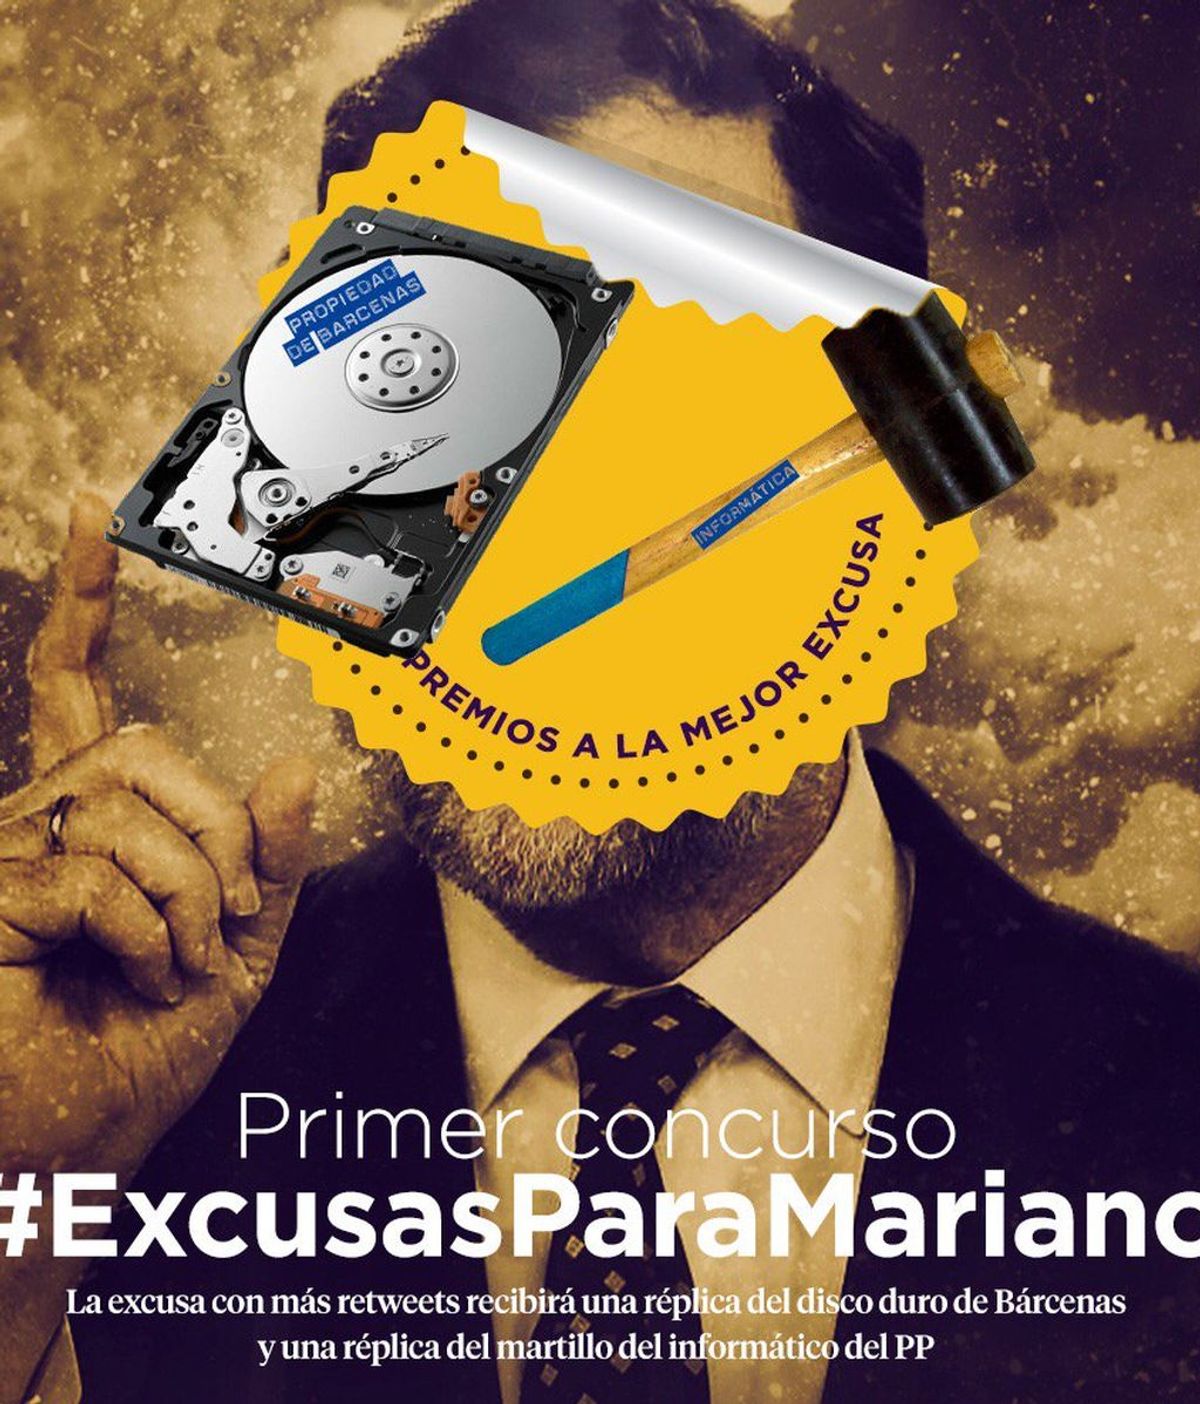 Pablo Iglesias y su equipo se 'mofan' de las excusas de Rajoy en redes sociales